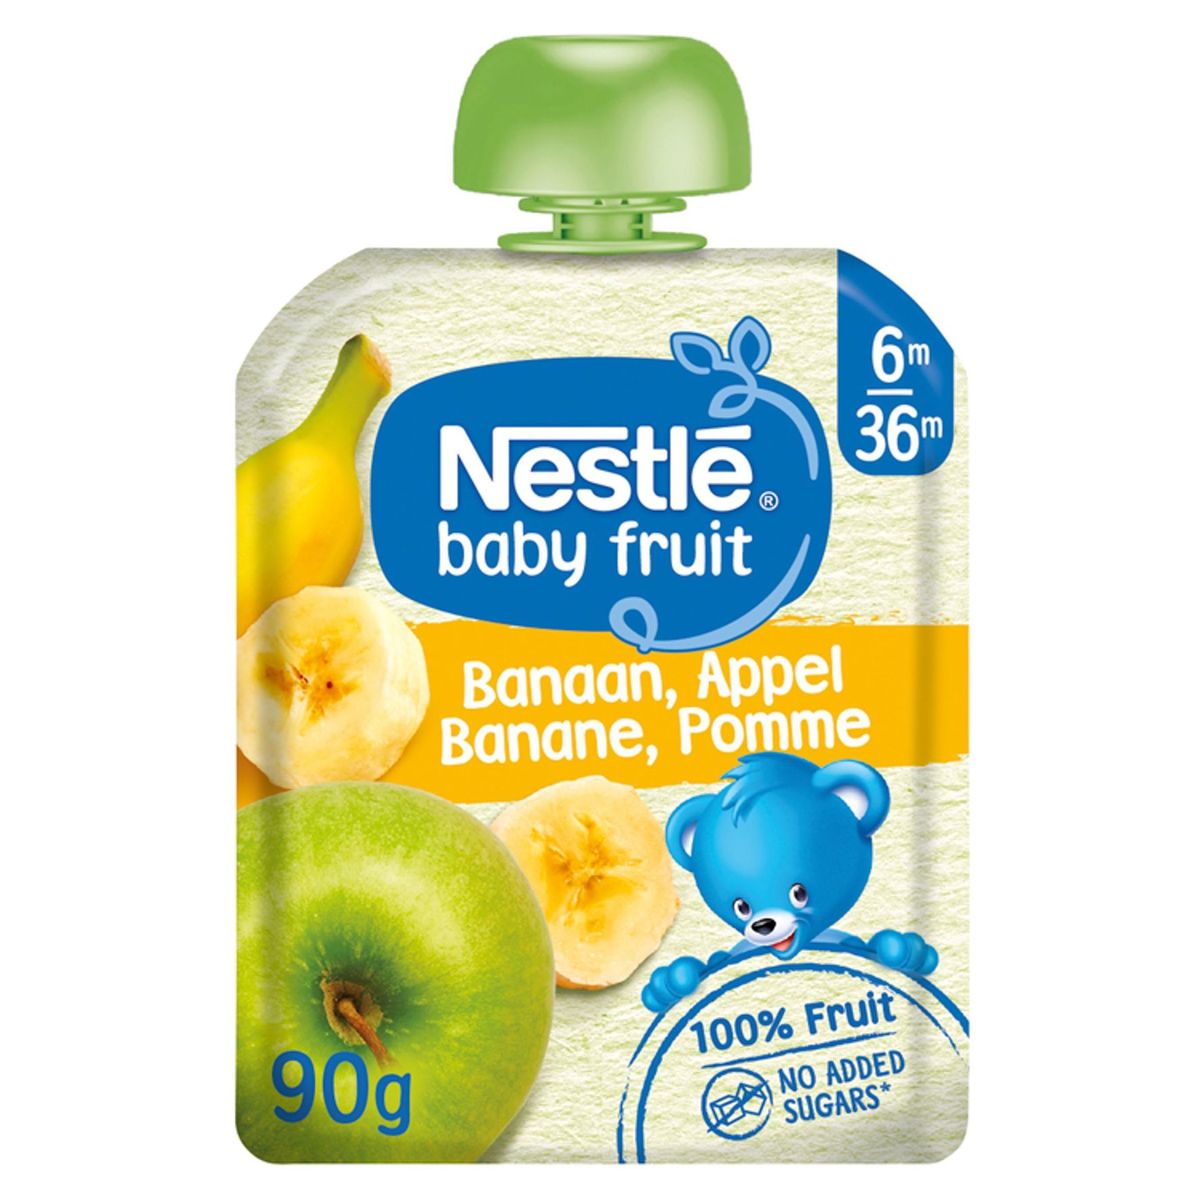 Nestlé Baby Fruit Banaan Appel vanaf 6 maanden knijpzakje 90g